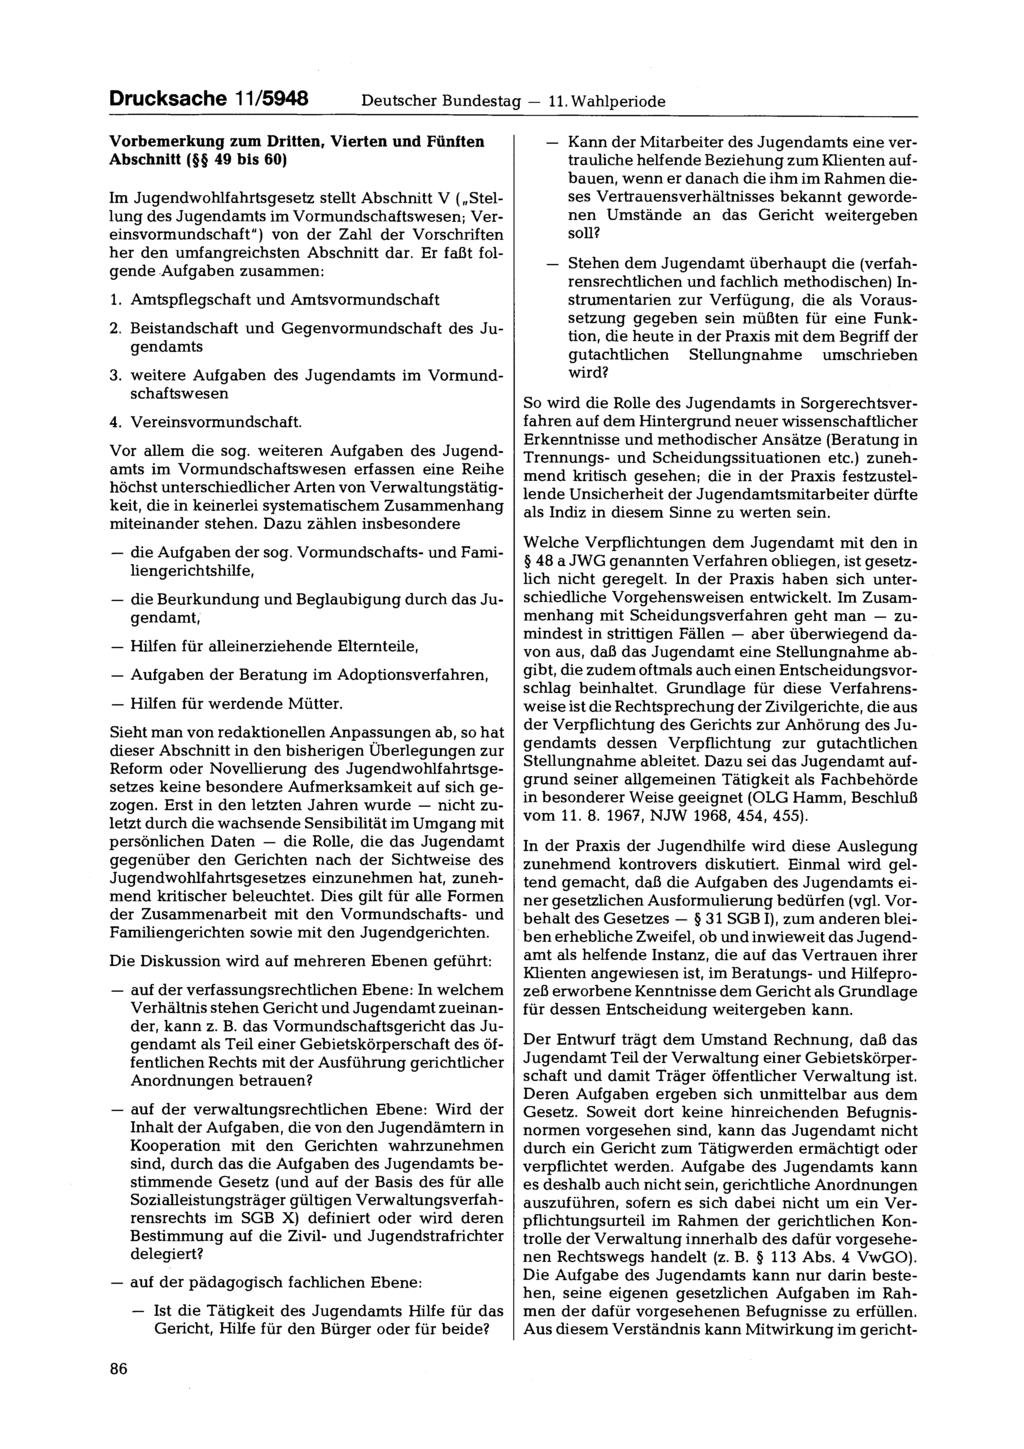 Drucksache 11/5948 Deutscher Bundestag 11.